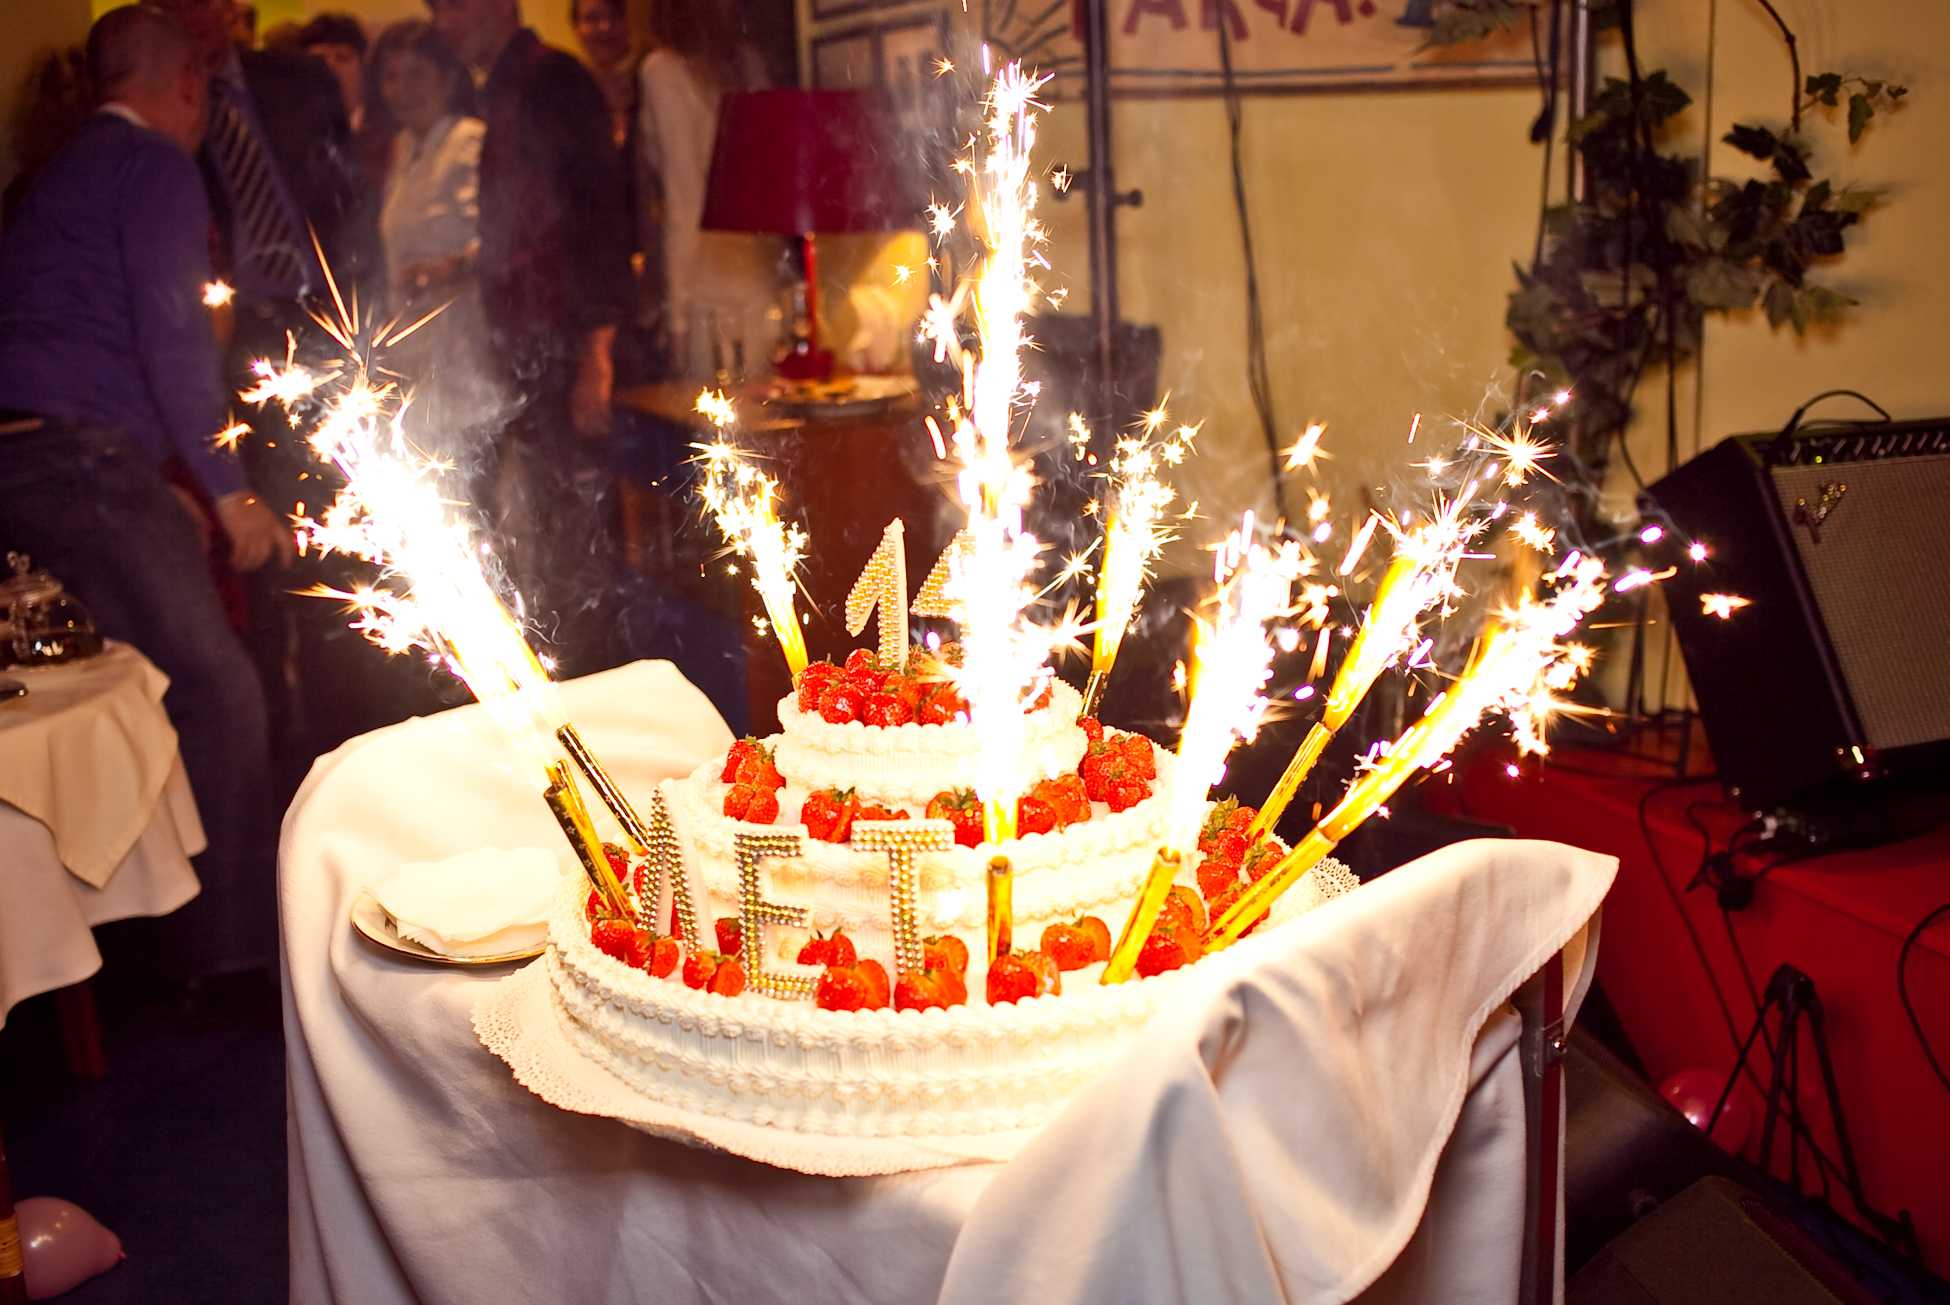 Как празднуется день рождения в россии. Праздничный торт. Праздничный стол с тортом. Свечи для торта. День рождения в ресторане.